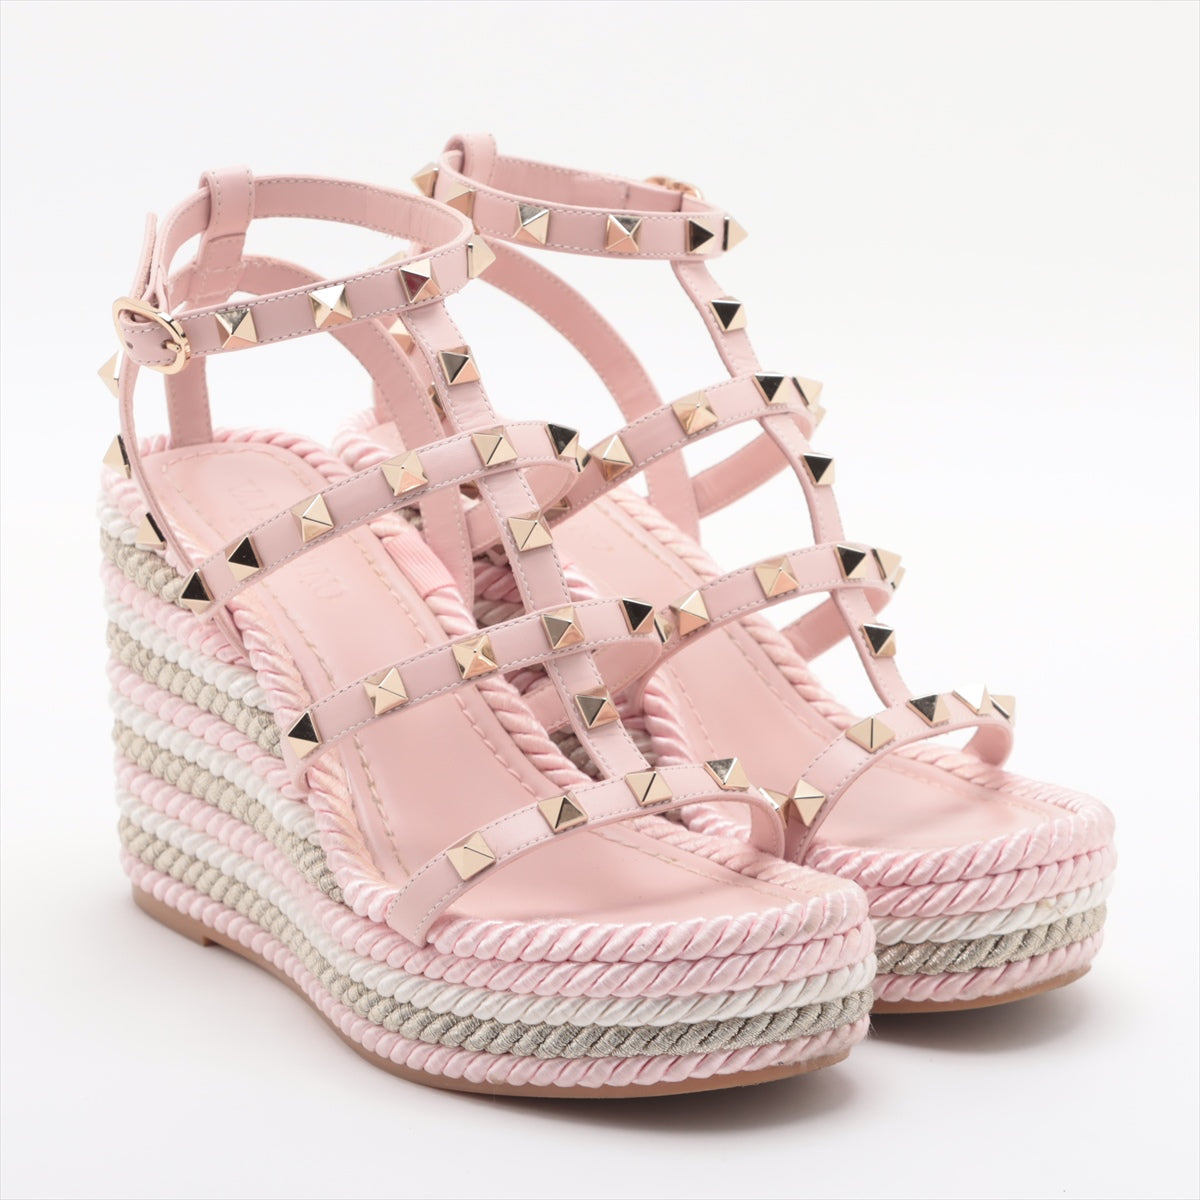 Valentino Garavani Leather Wedge Sole Sandals 34 Ladies' Pink Rock Studs